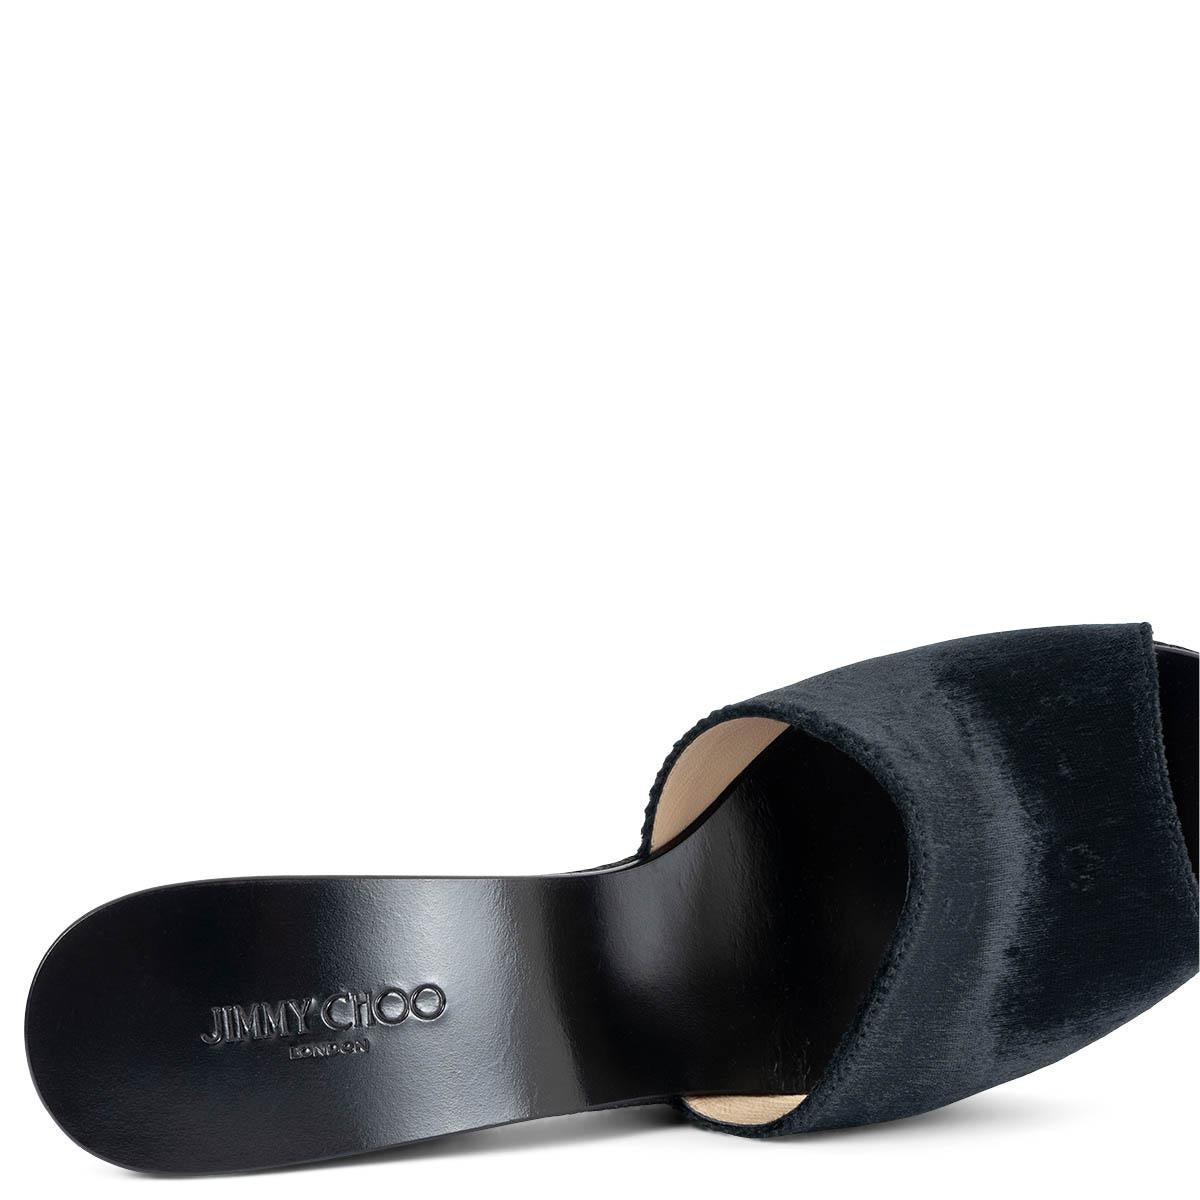 JIMMY CHOO black suede & jute DEEDEE Platform Sandals Shoes 40.5 For Sale 2